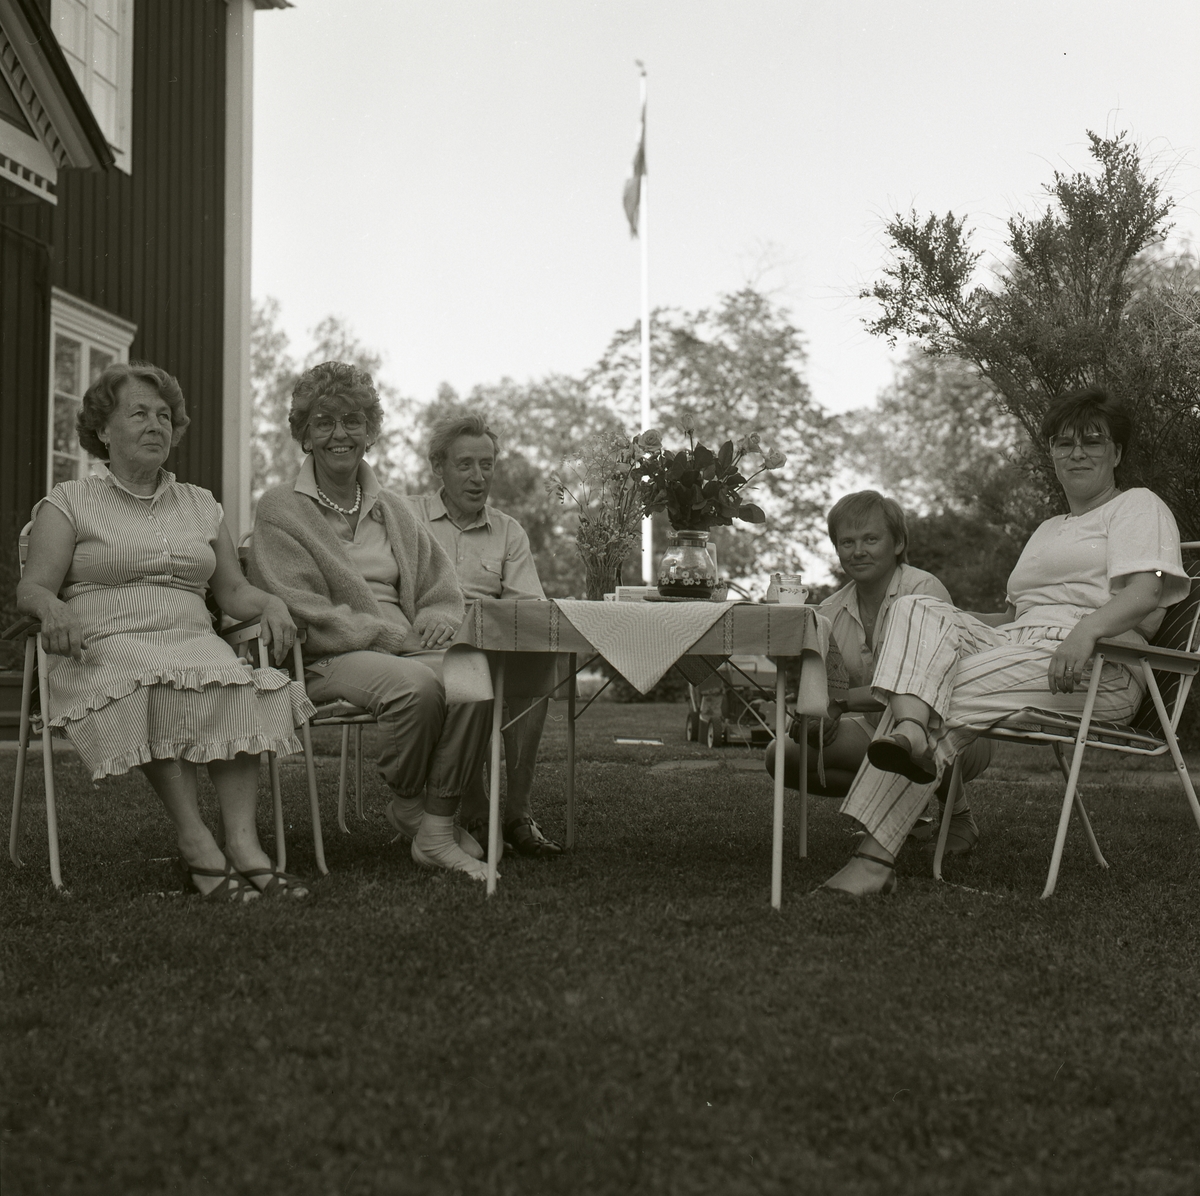 Adéle och några andra kvinnor och män sitter vid dukat kaffebord. På bordet ligger en duk och det står ett par blombuketter där. På sidan om står ett hus med snickarglädje och fönster, bakom är flaggan hissad. Det finns även träd och gräs. Adéles 68 årsdag juni 1986.